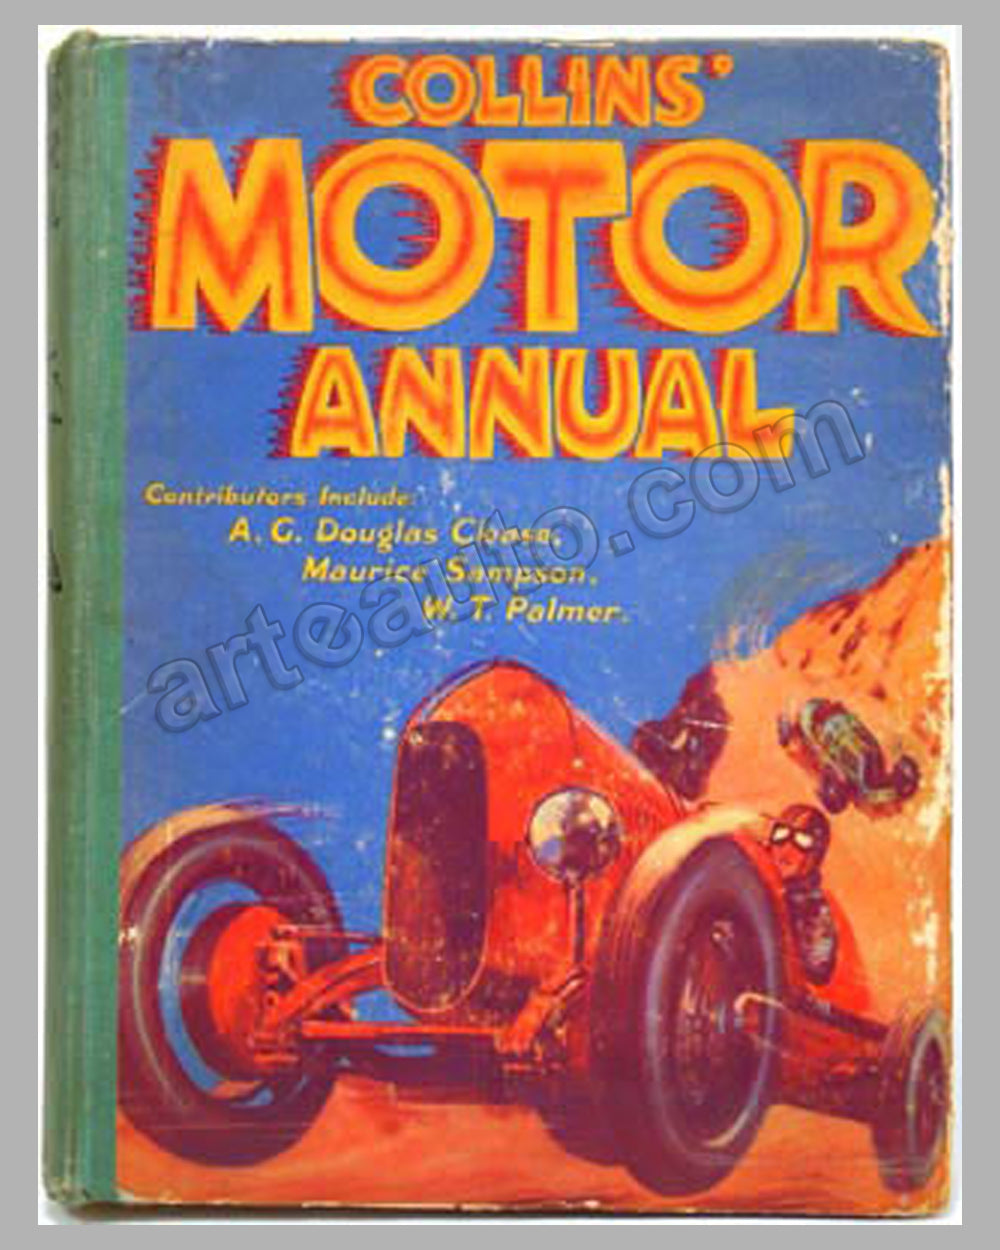 Collin's Motor Annual book